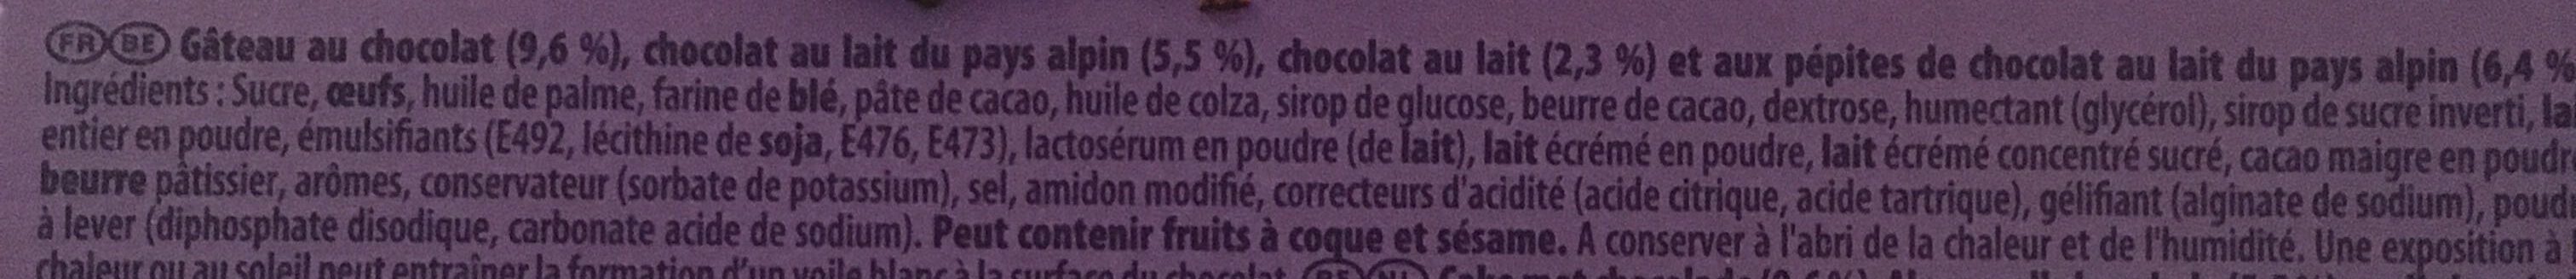 Choco Brownie - Ingredients - fr